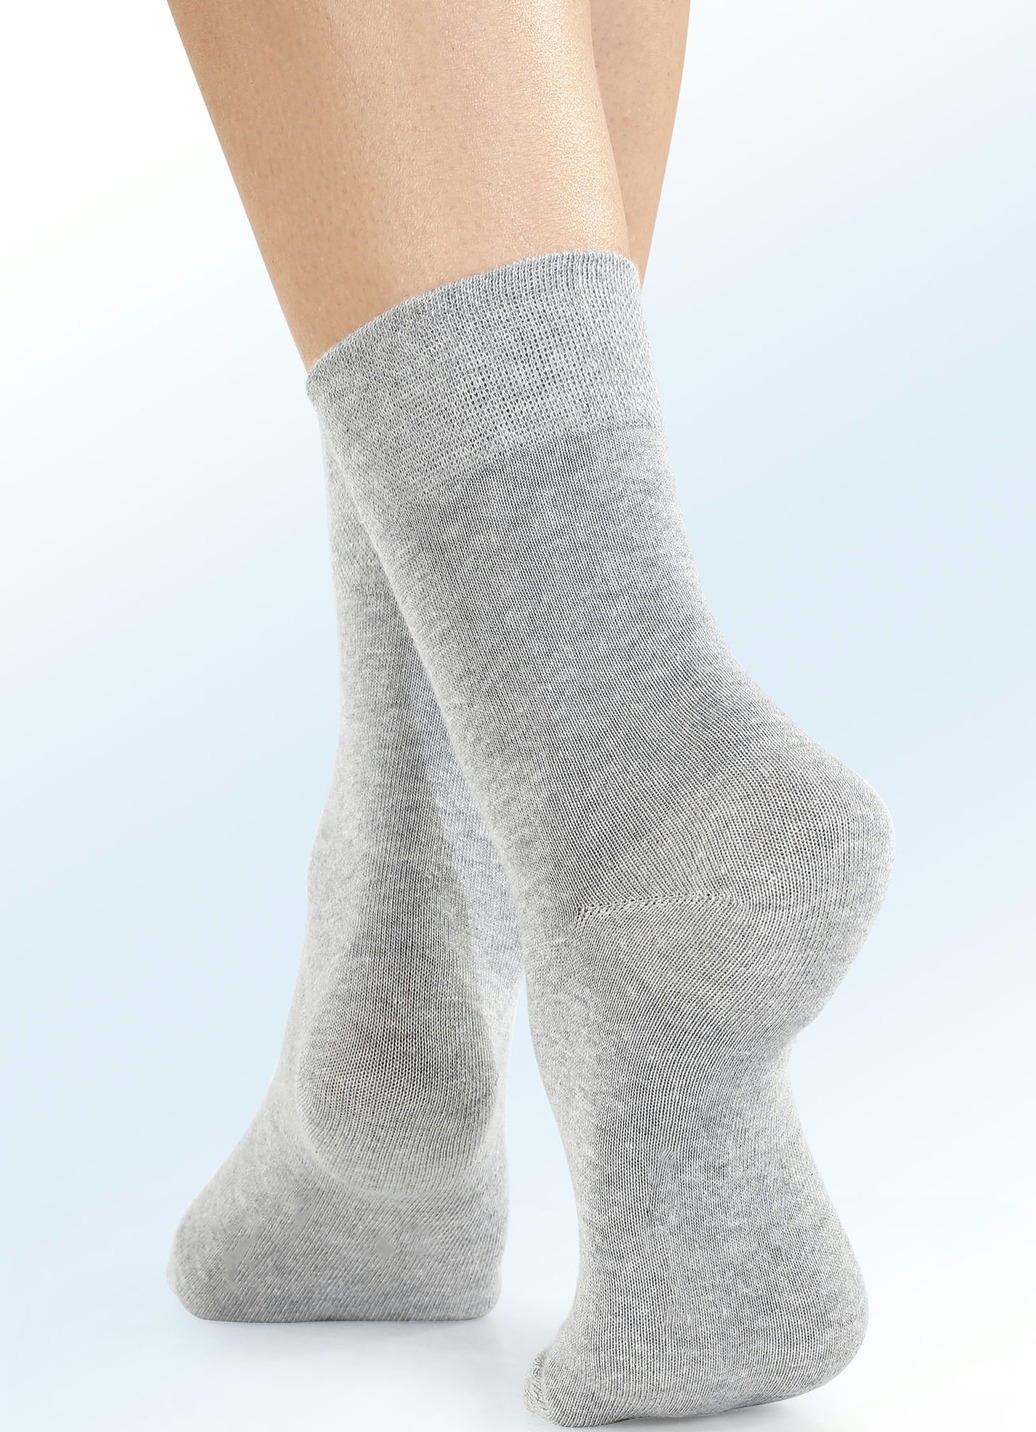 Viererpack Socken mit BIO-Baumwolle, 2X Silbergrau Meliert, 2X Anthrazit Meliert, Größe 3 (Schuhgr. 43-46) von BADER